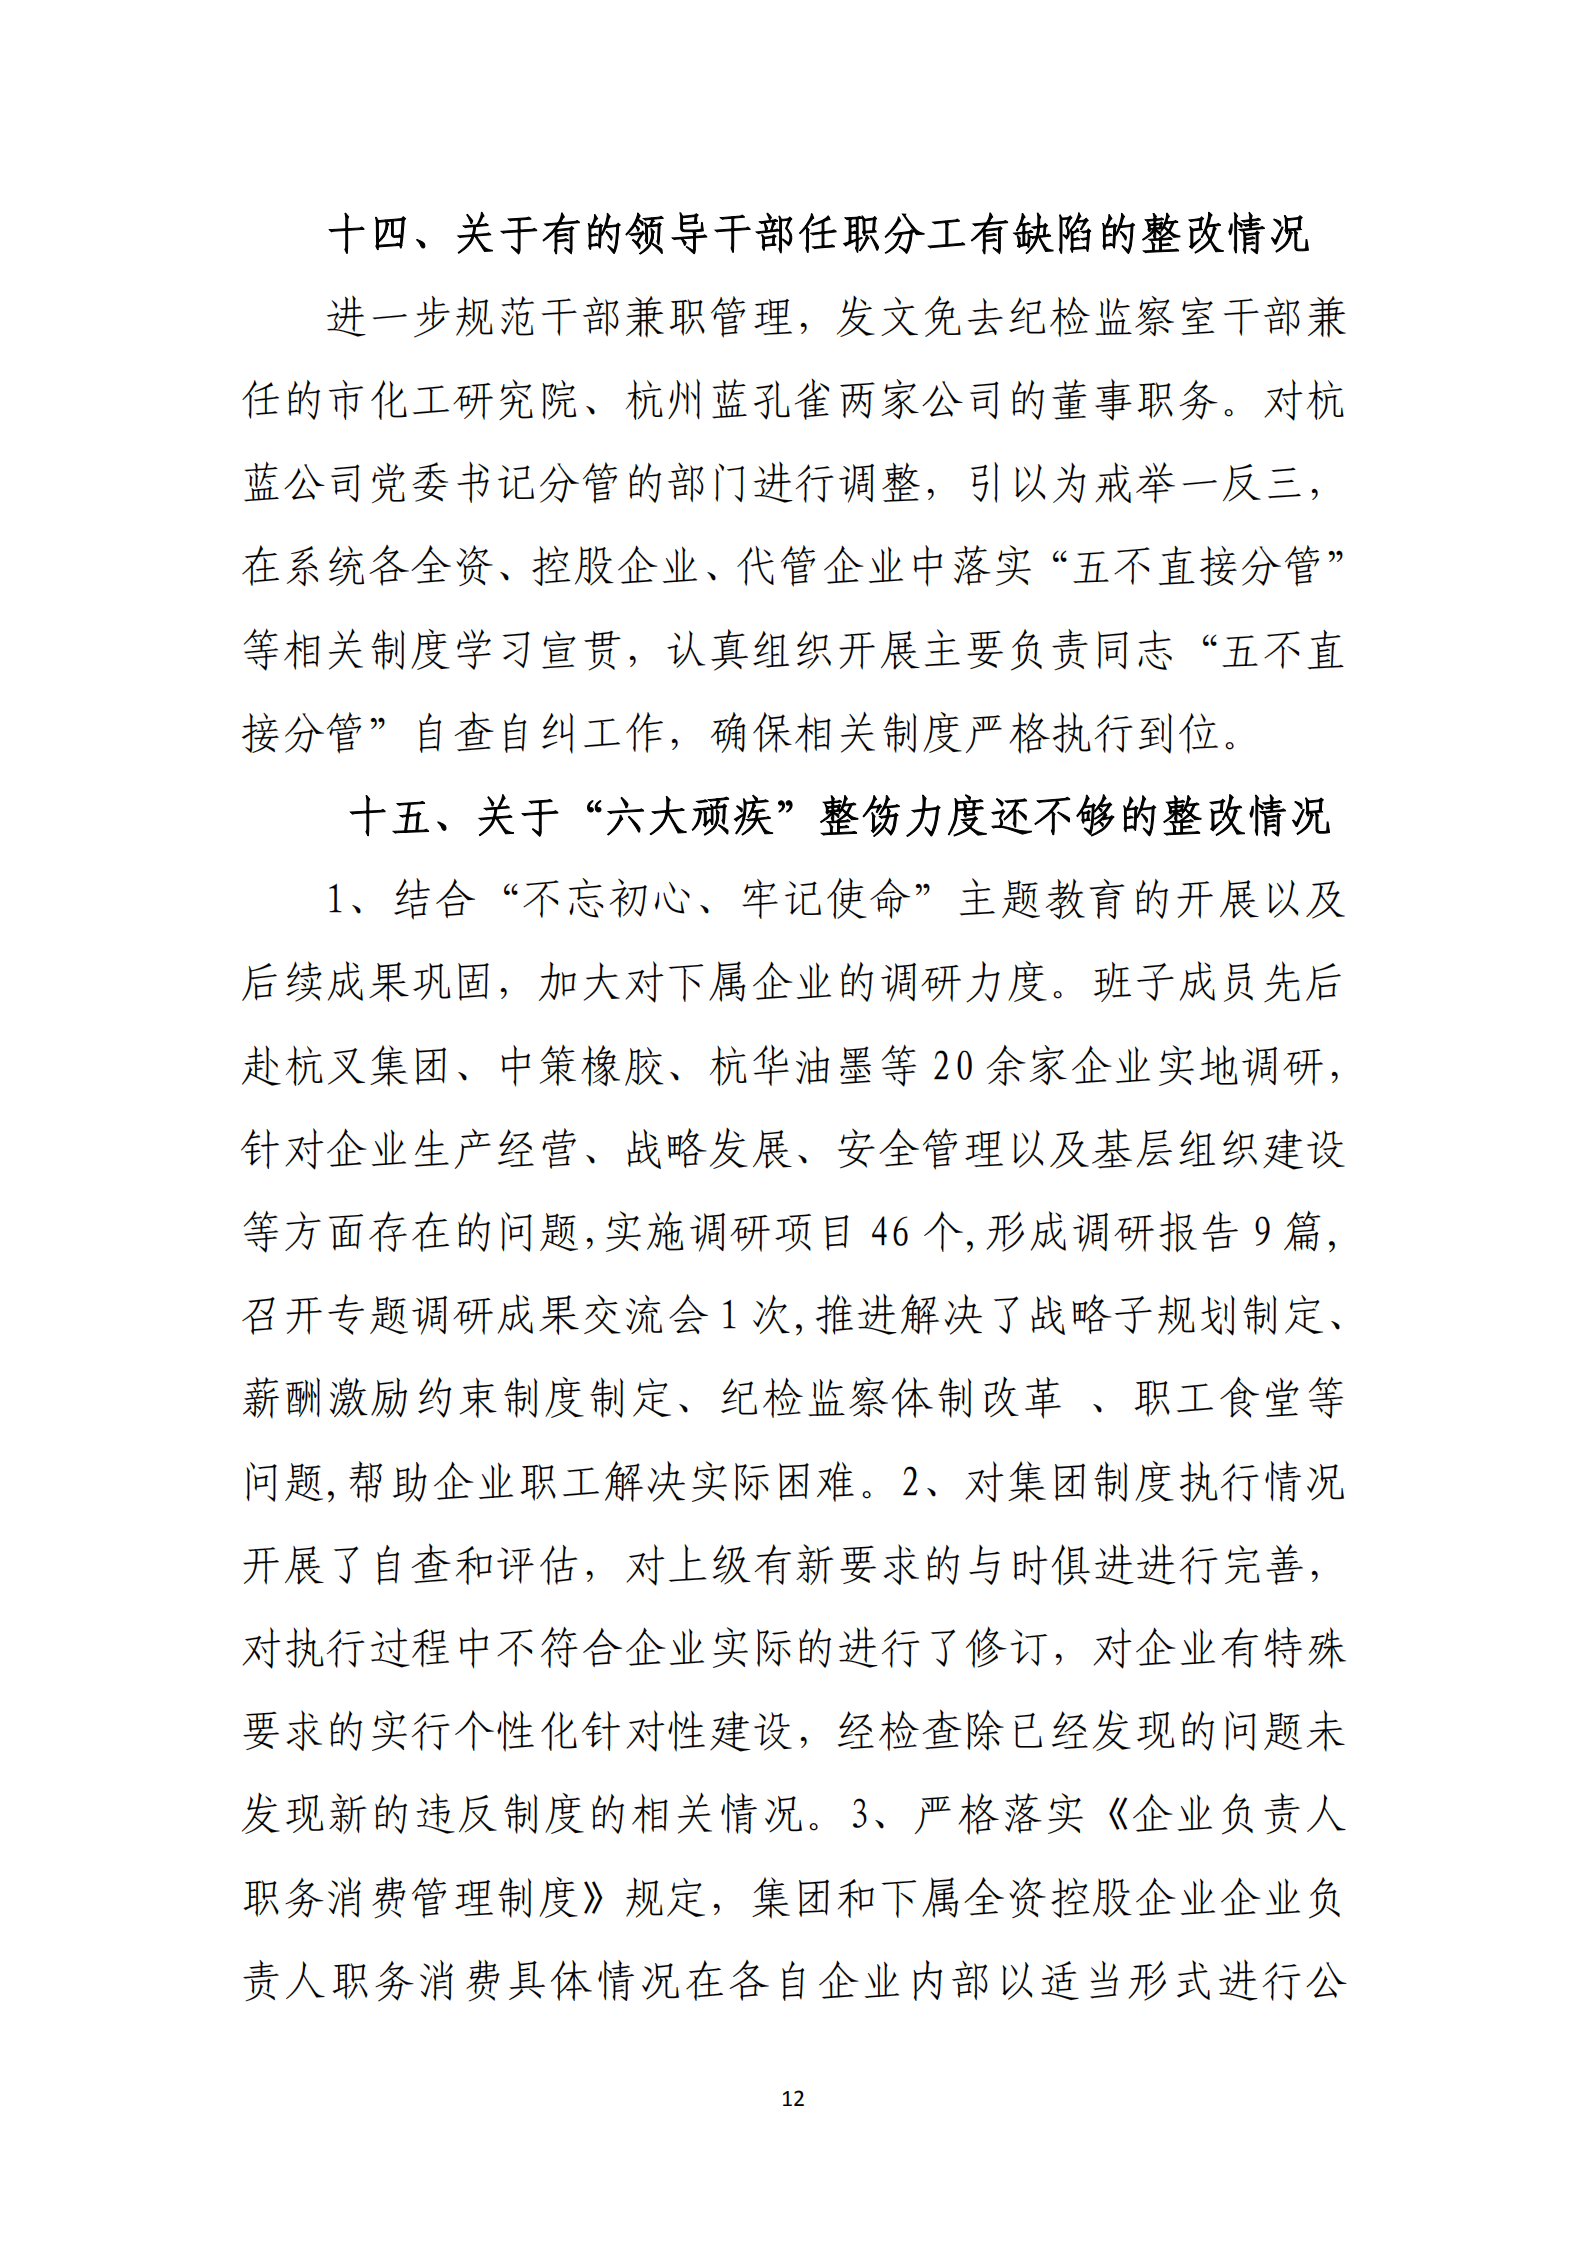 【体育365官方网站】中国有限公司党委关于巡察整改情况的通报_11.png